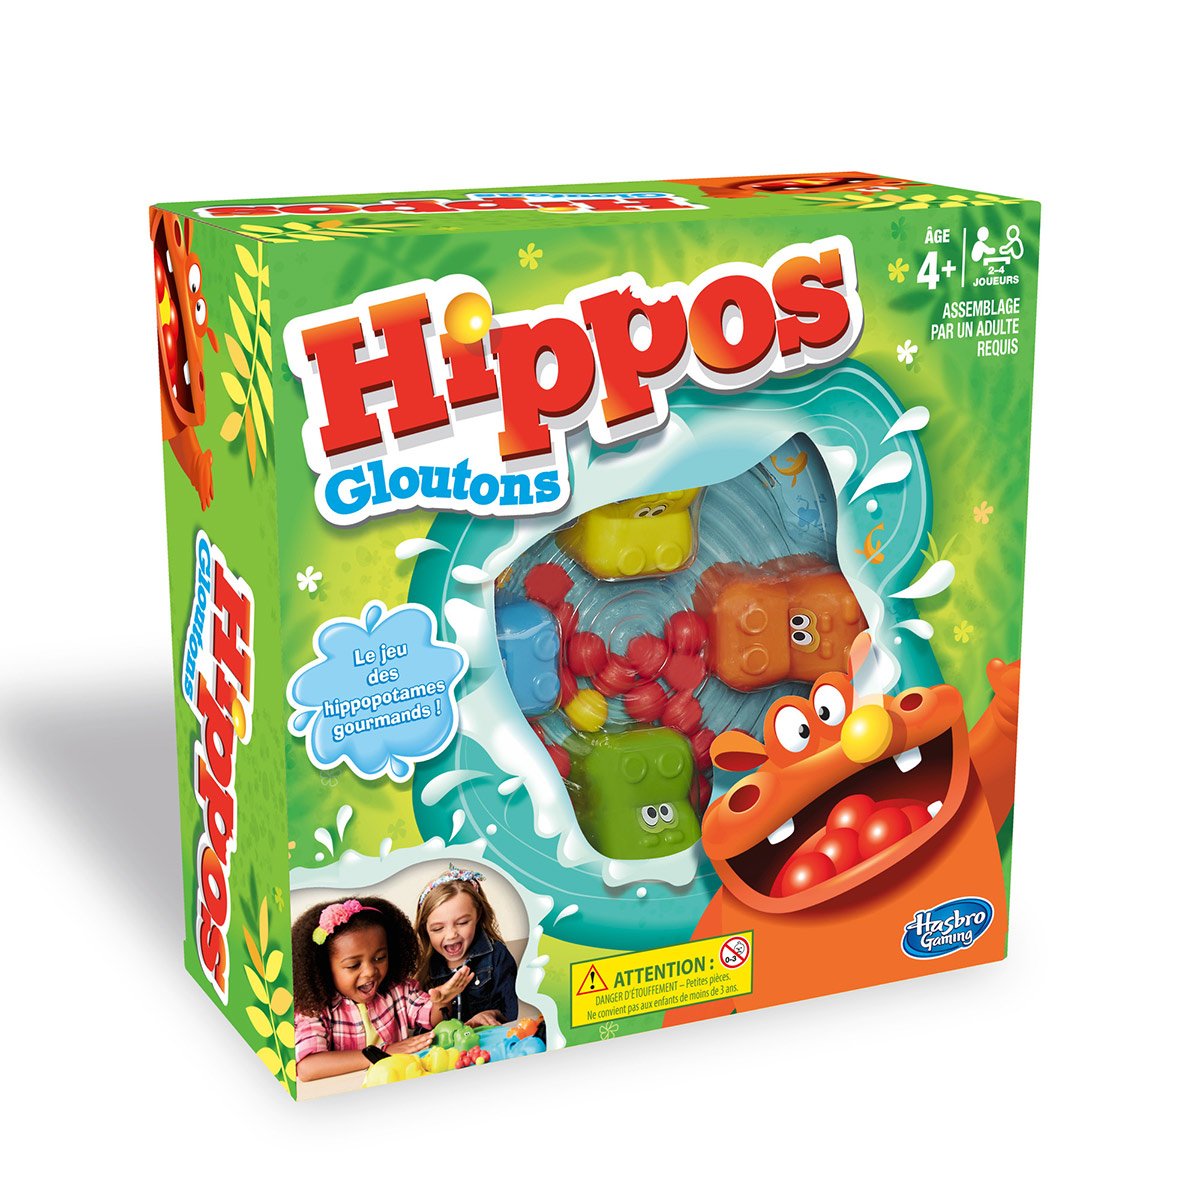 Hippo glouton